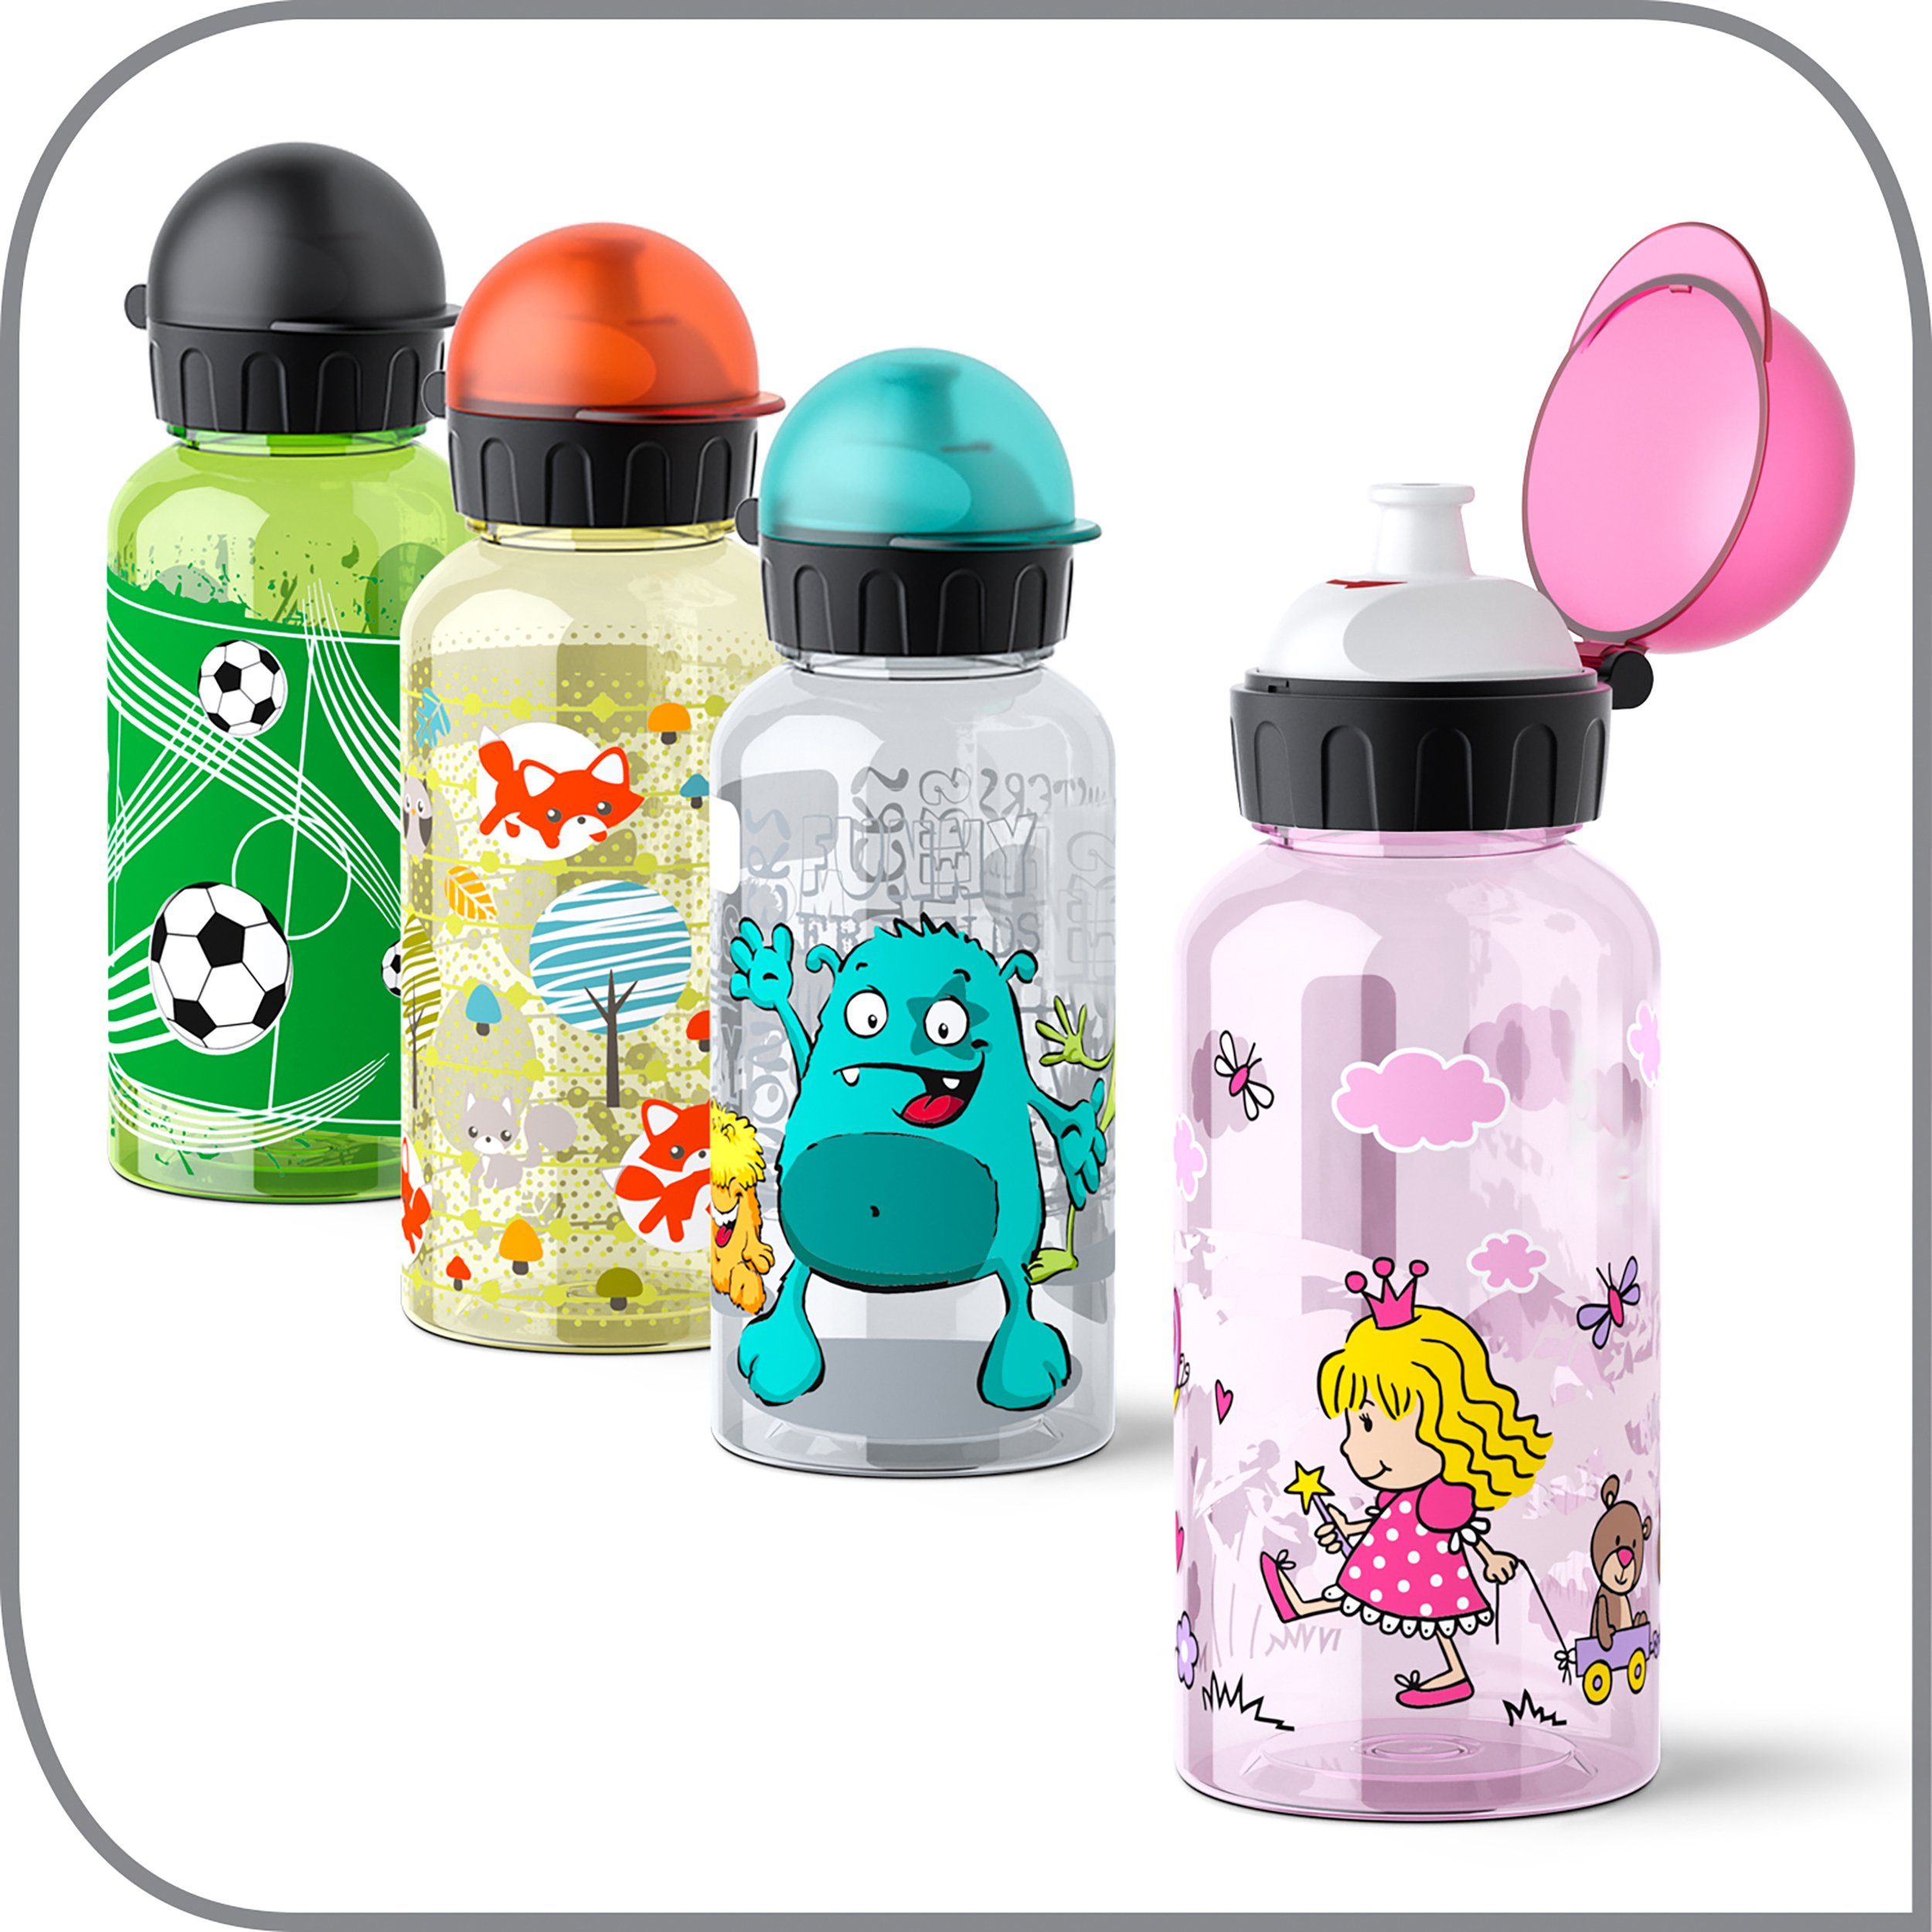 Kids N30333 Tritan, sicher/praktisch/hygienisch/dicht/unbedenklich,500 ml Trinkflasche Emsa